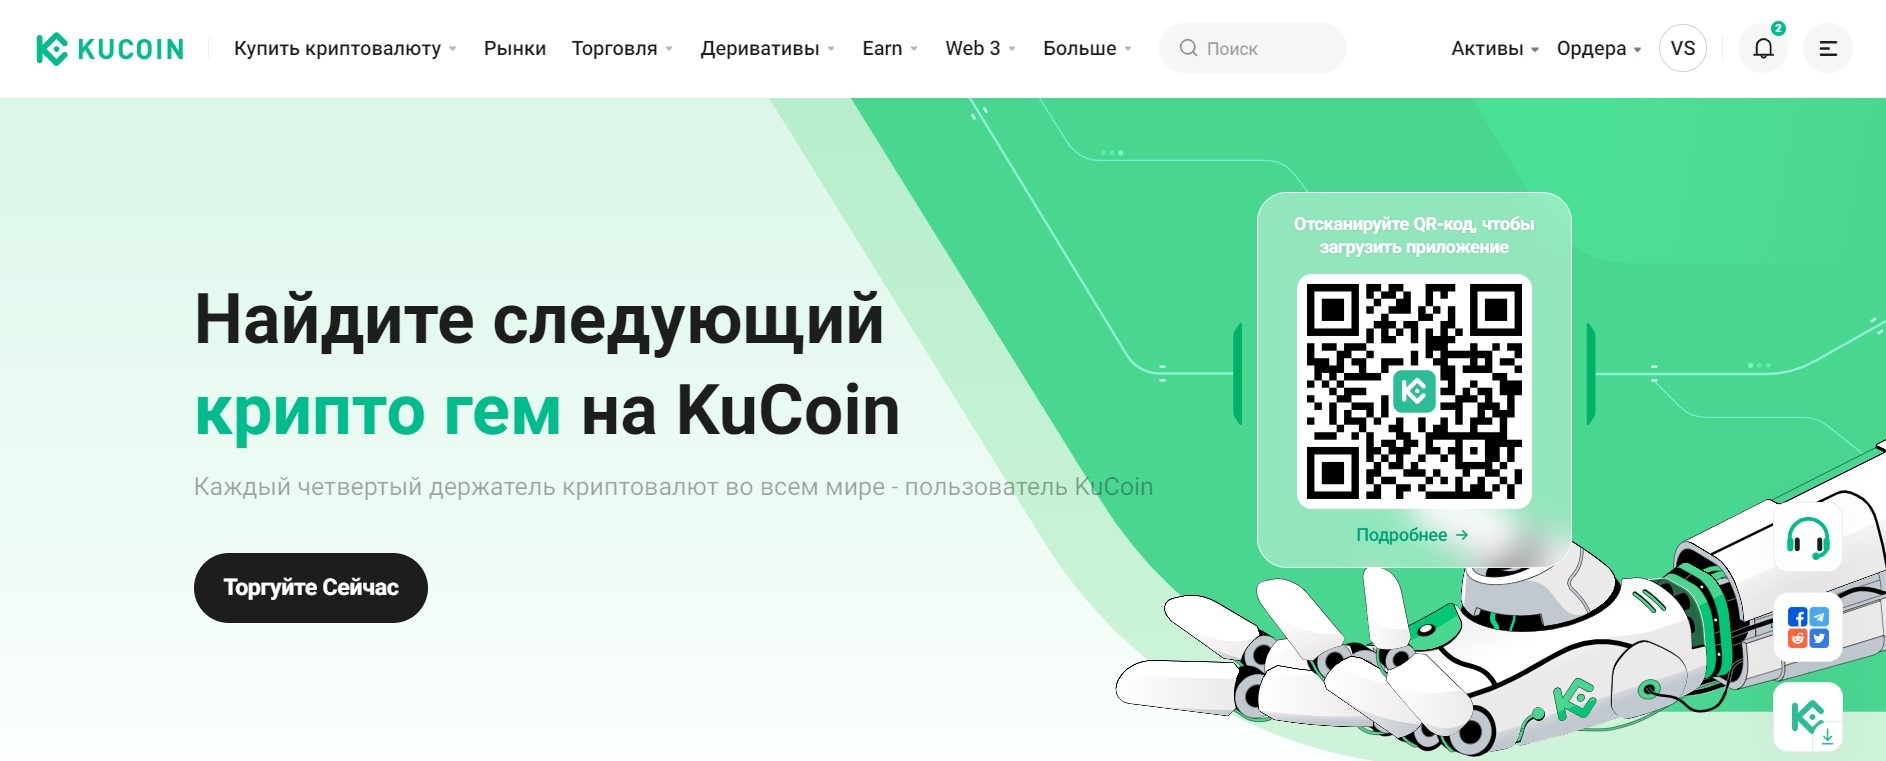 Главная страница сайта KuCoin.com